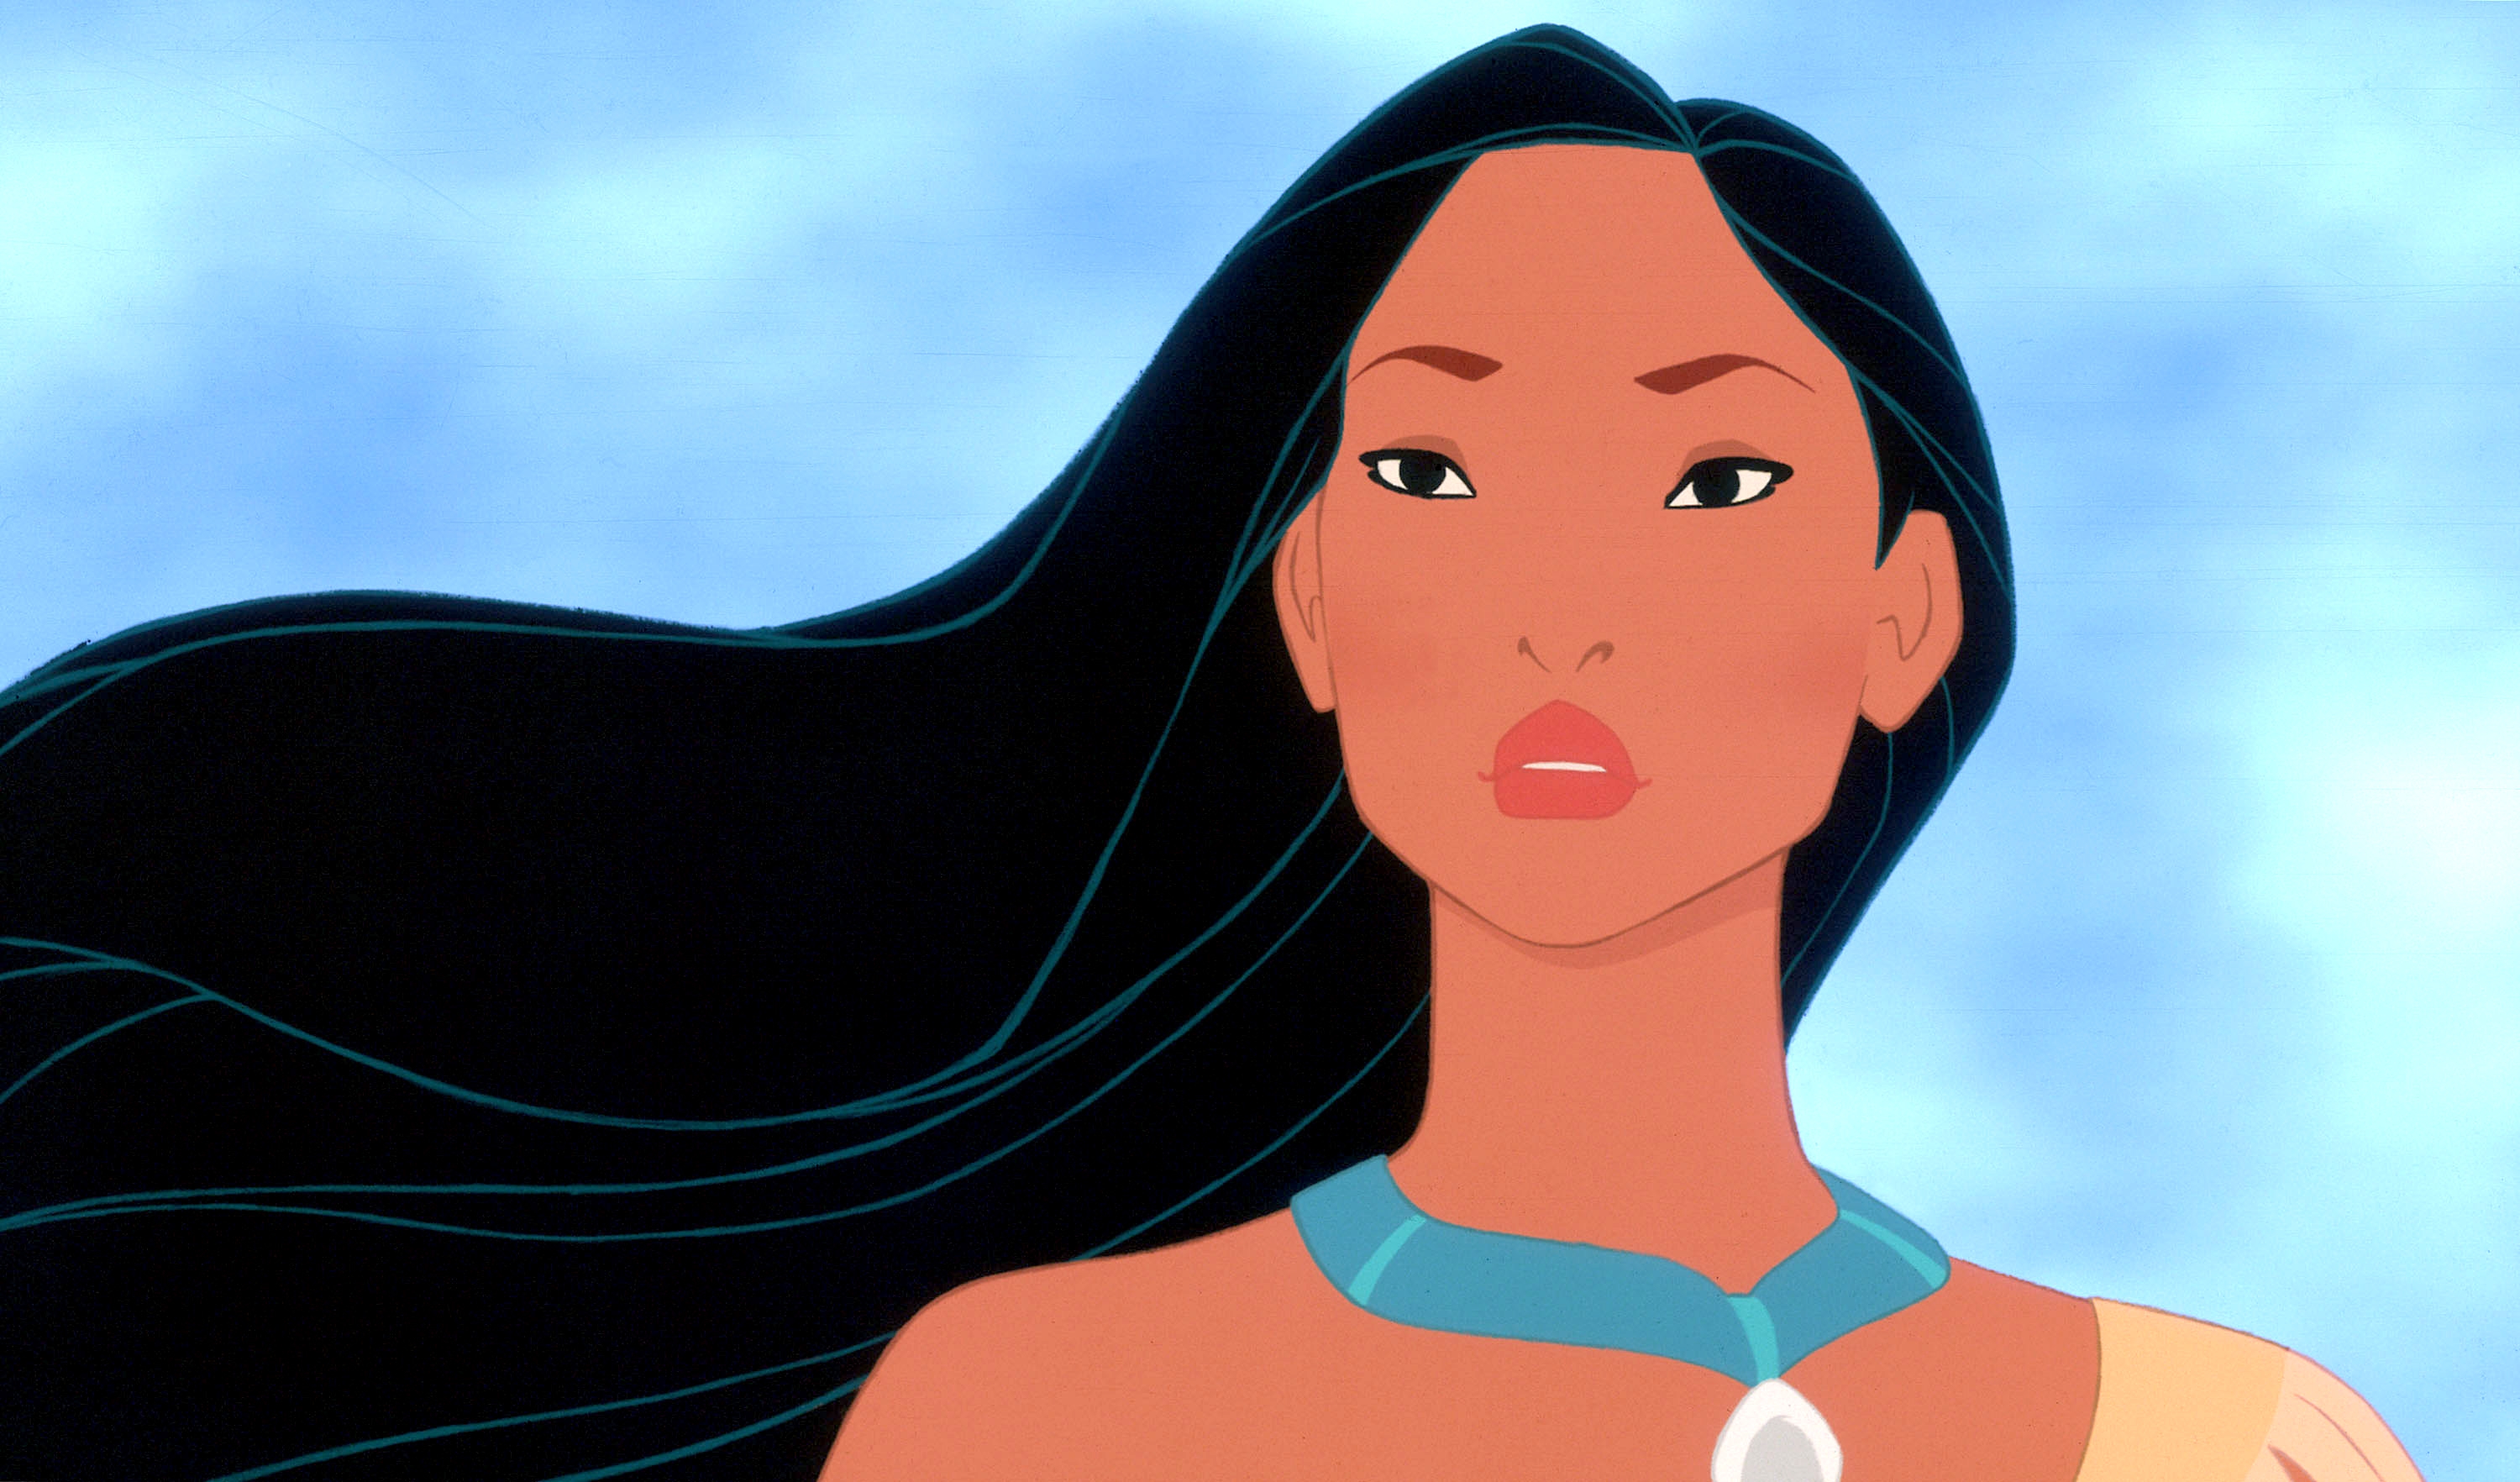 Image du film Pocahontas, une légende indienne 8d8c0959-8155-4cf5-9845-383ca8b31b53